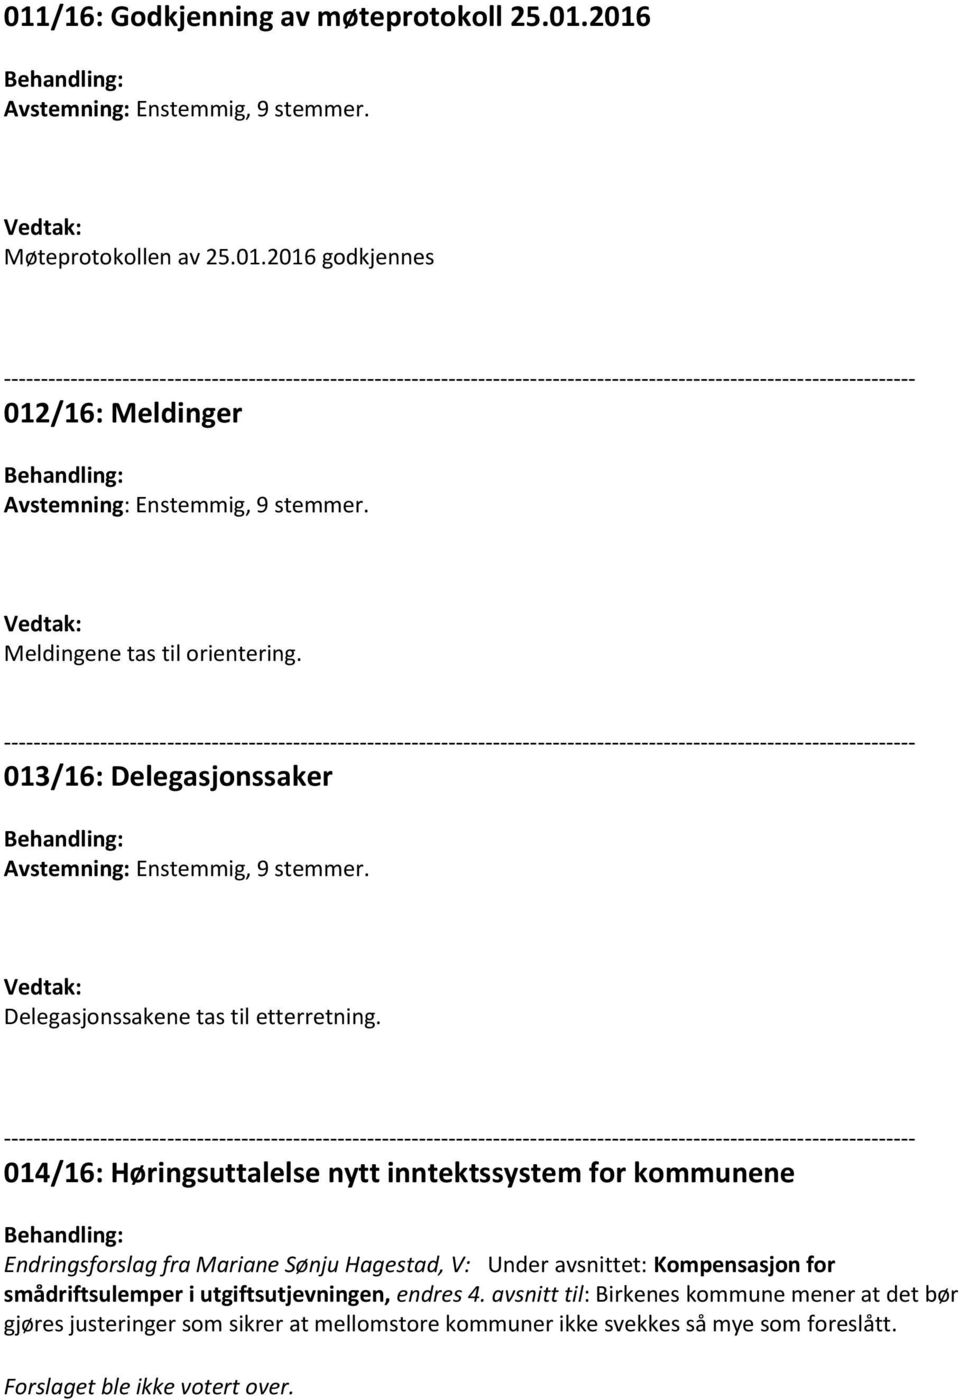 014/16: Høringsuttalelse nytt inntektssystem for kommunene Endringsforslag fra Mariane Sønju Hagestad, V: Under avsnittet: Kompensasjon for smådriftsulemper i